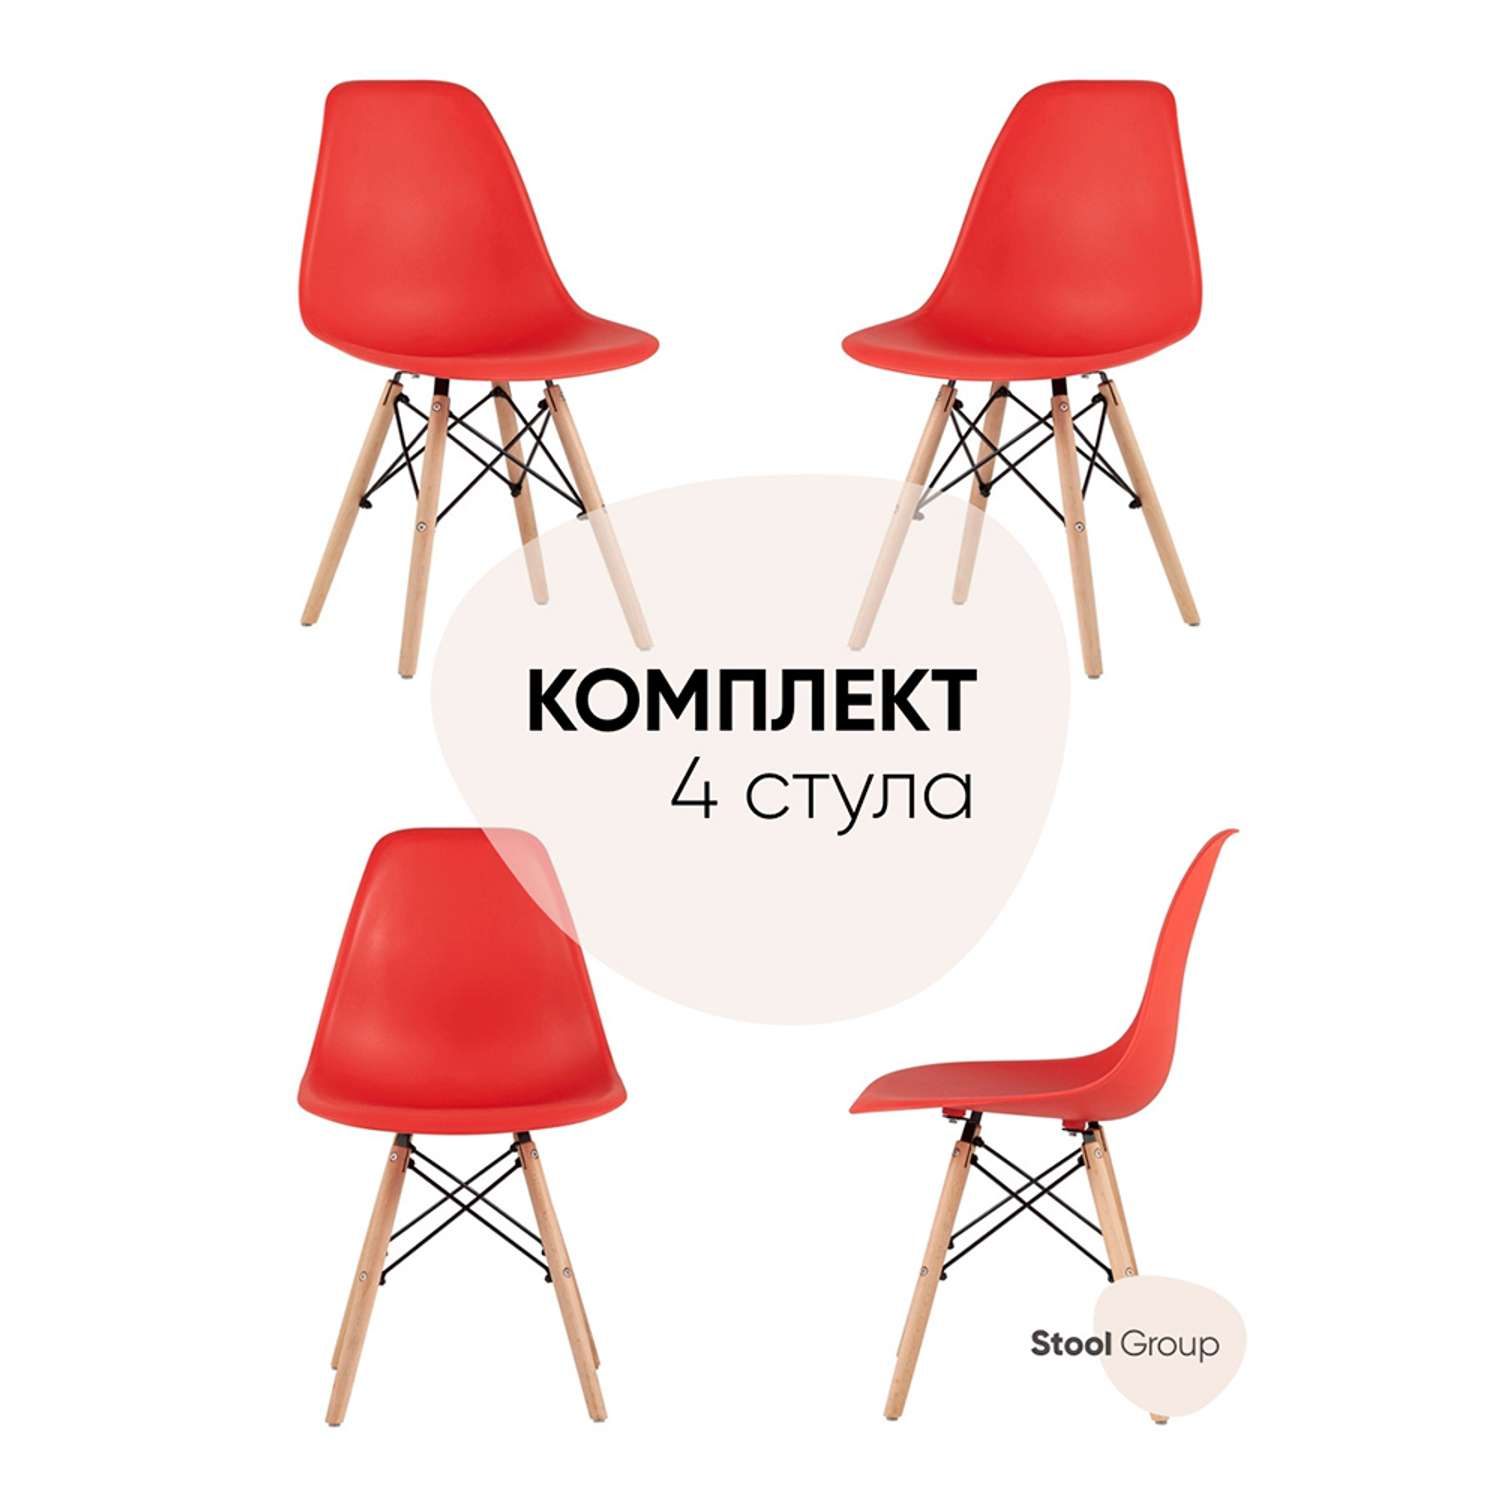 Комплект стульев Stool Group DSW Style красный - фото 1